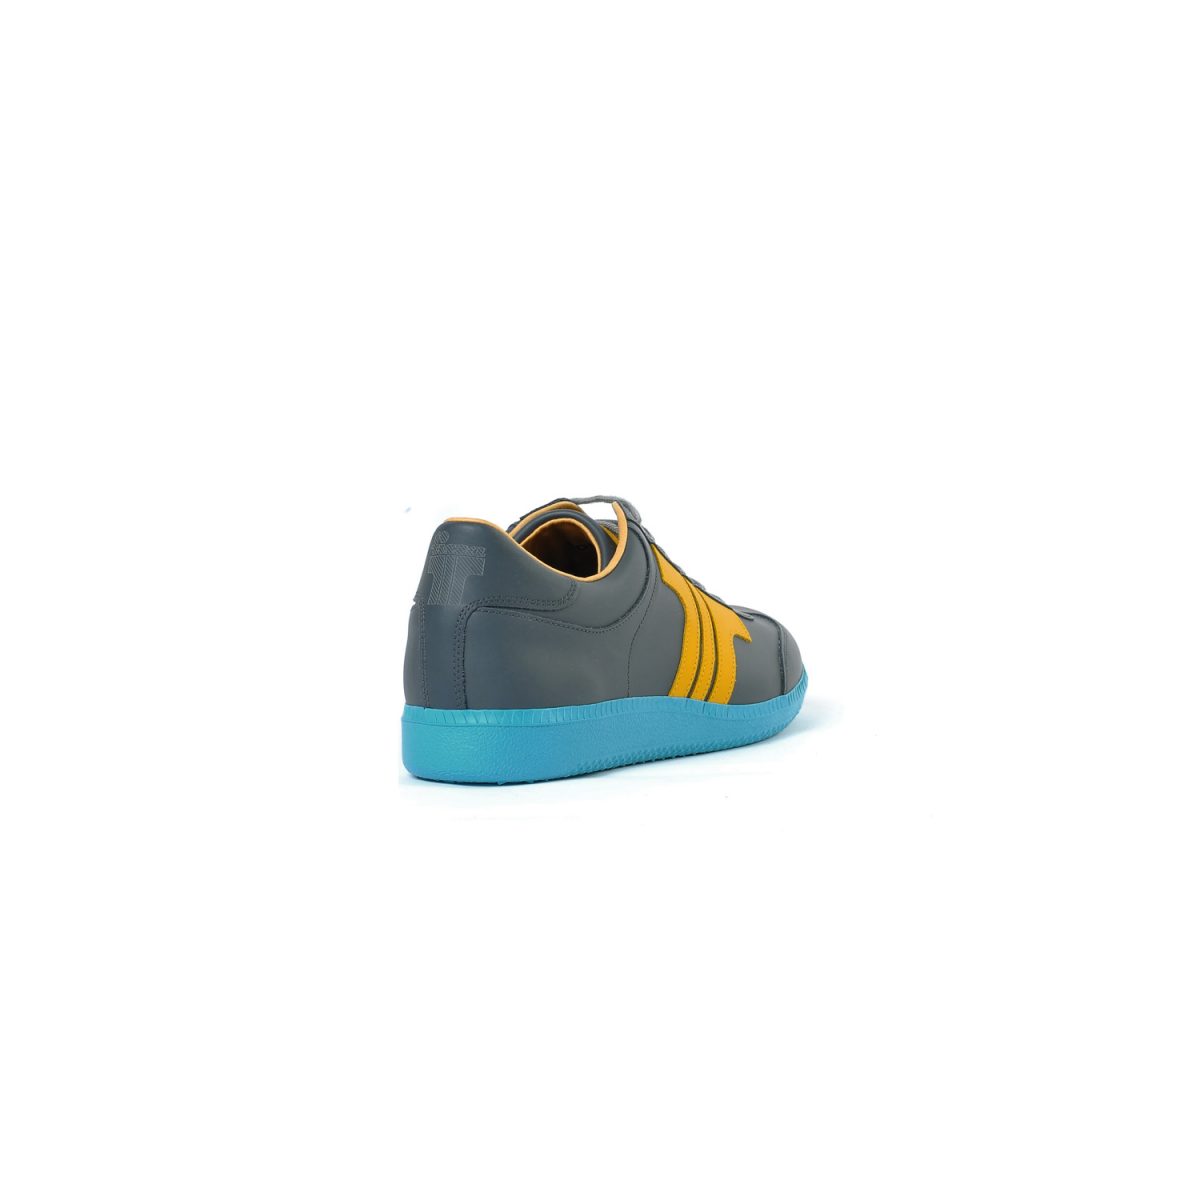 Tisza cipő - Compakt - Árnyék-sárga